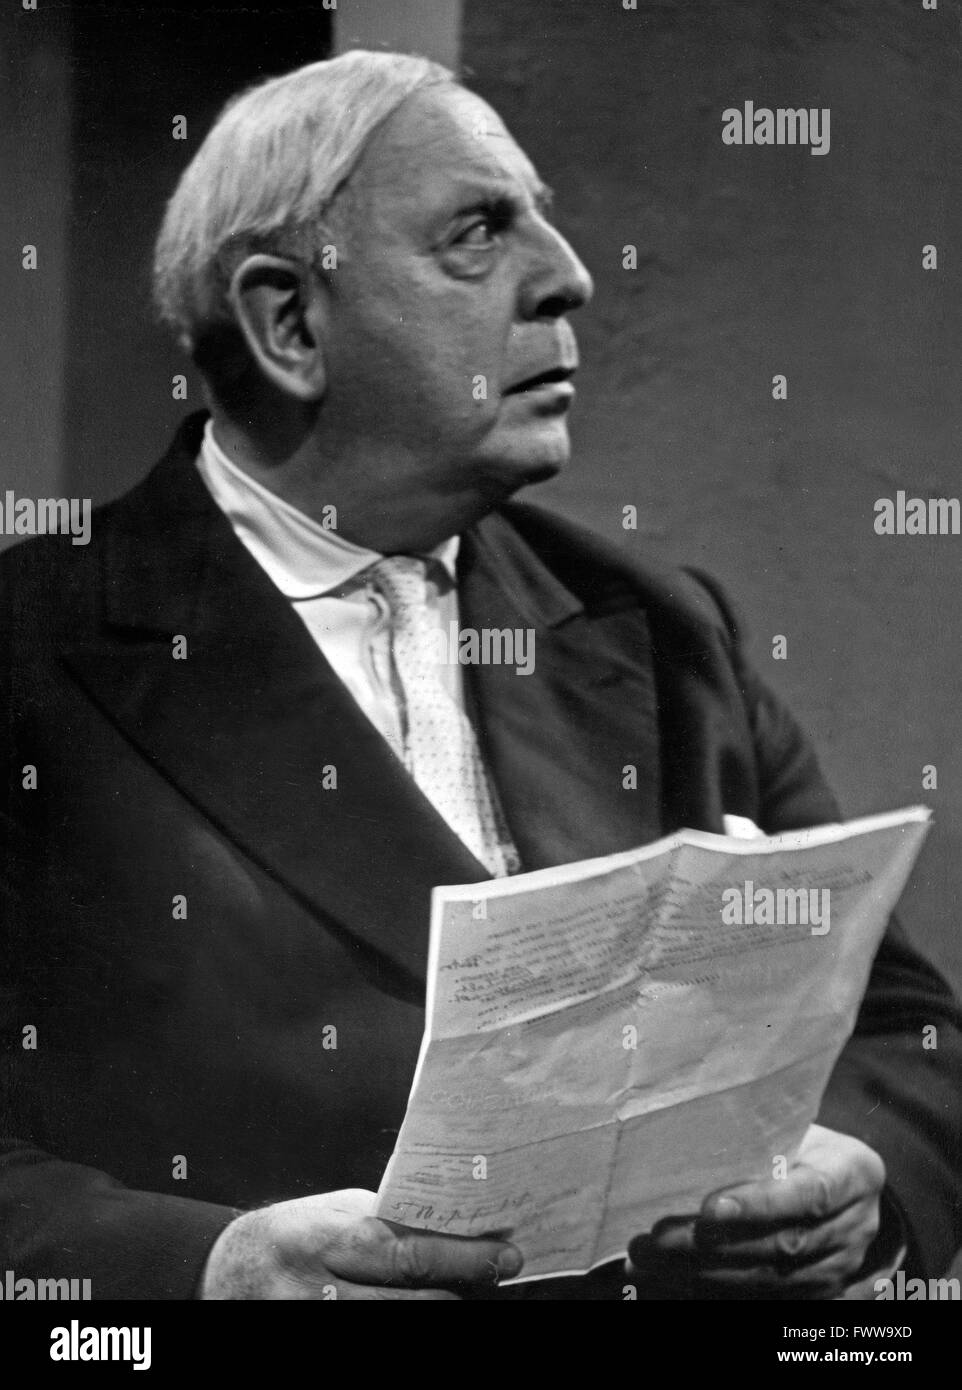 Deutscher Soziologe und Schriftsteller Ludwig Berger, Deutschland 1950er Jahre. Deutsche movi Regisseur und Autor Ludwig Berger, Deutschland 1950. Stockfoto